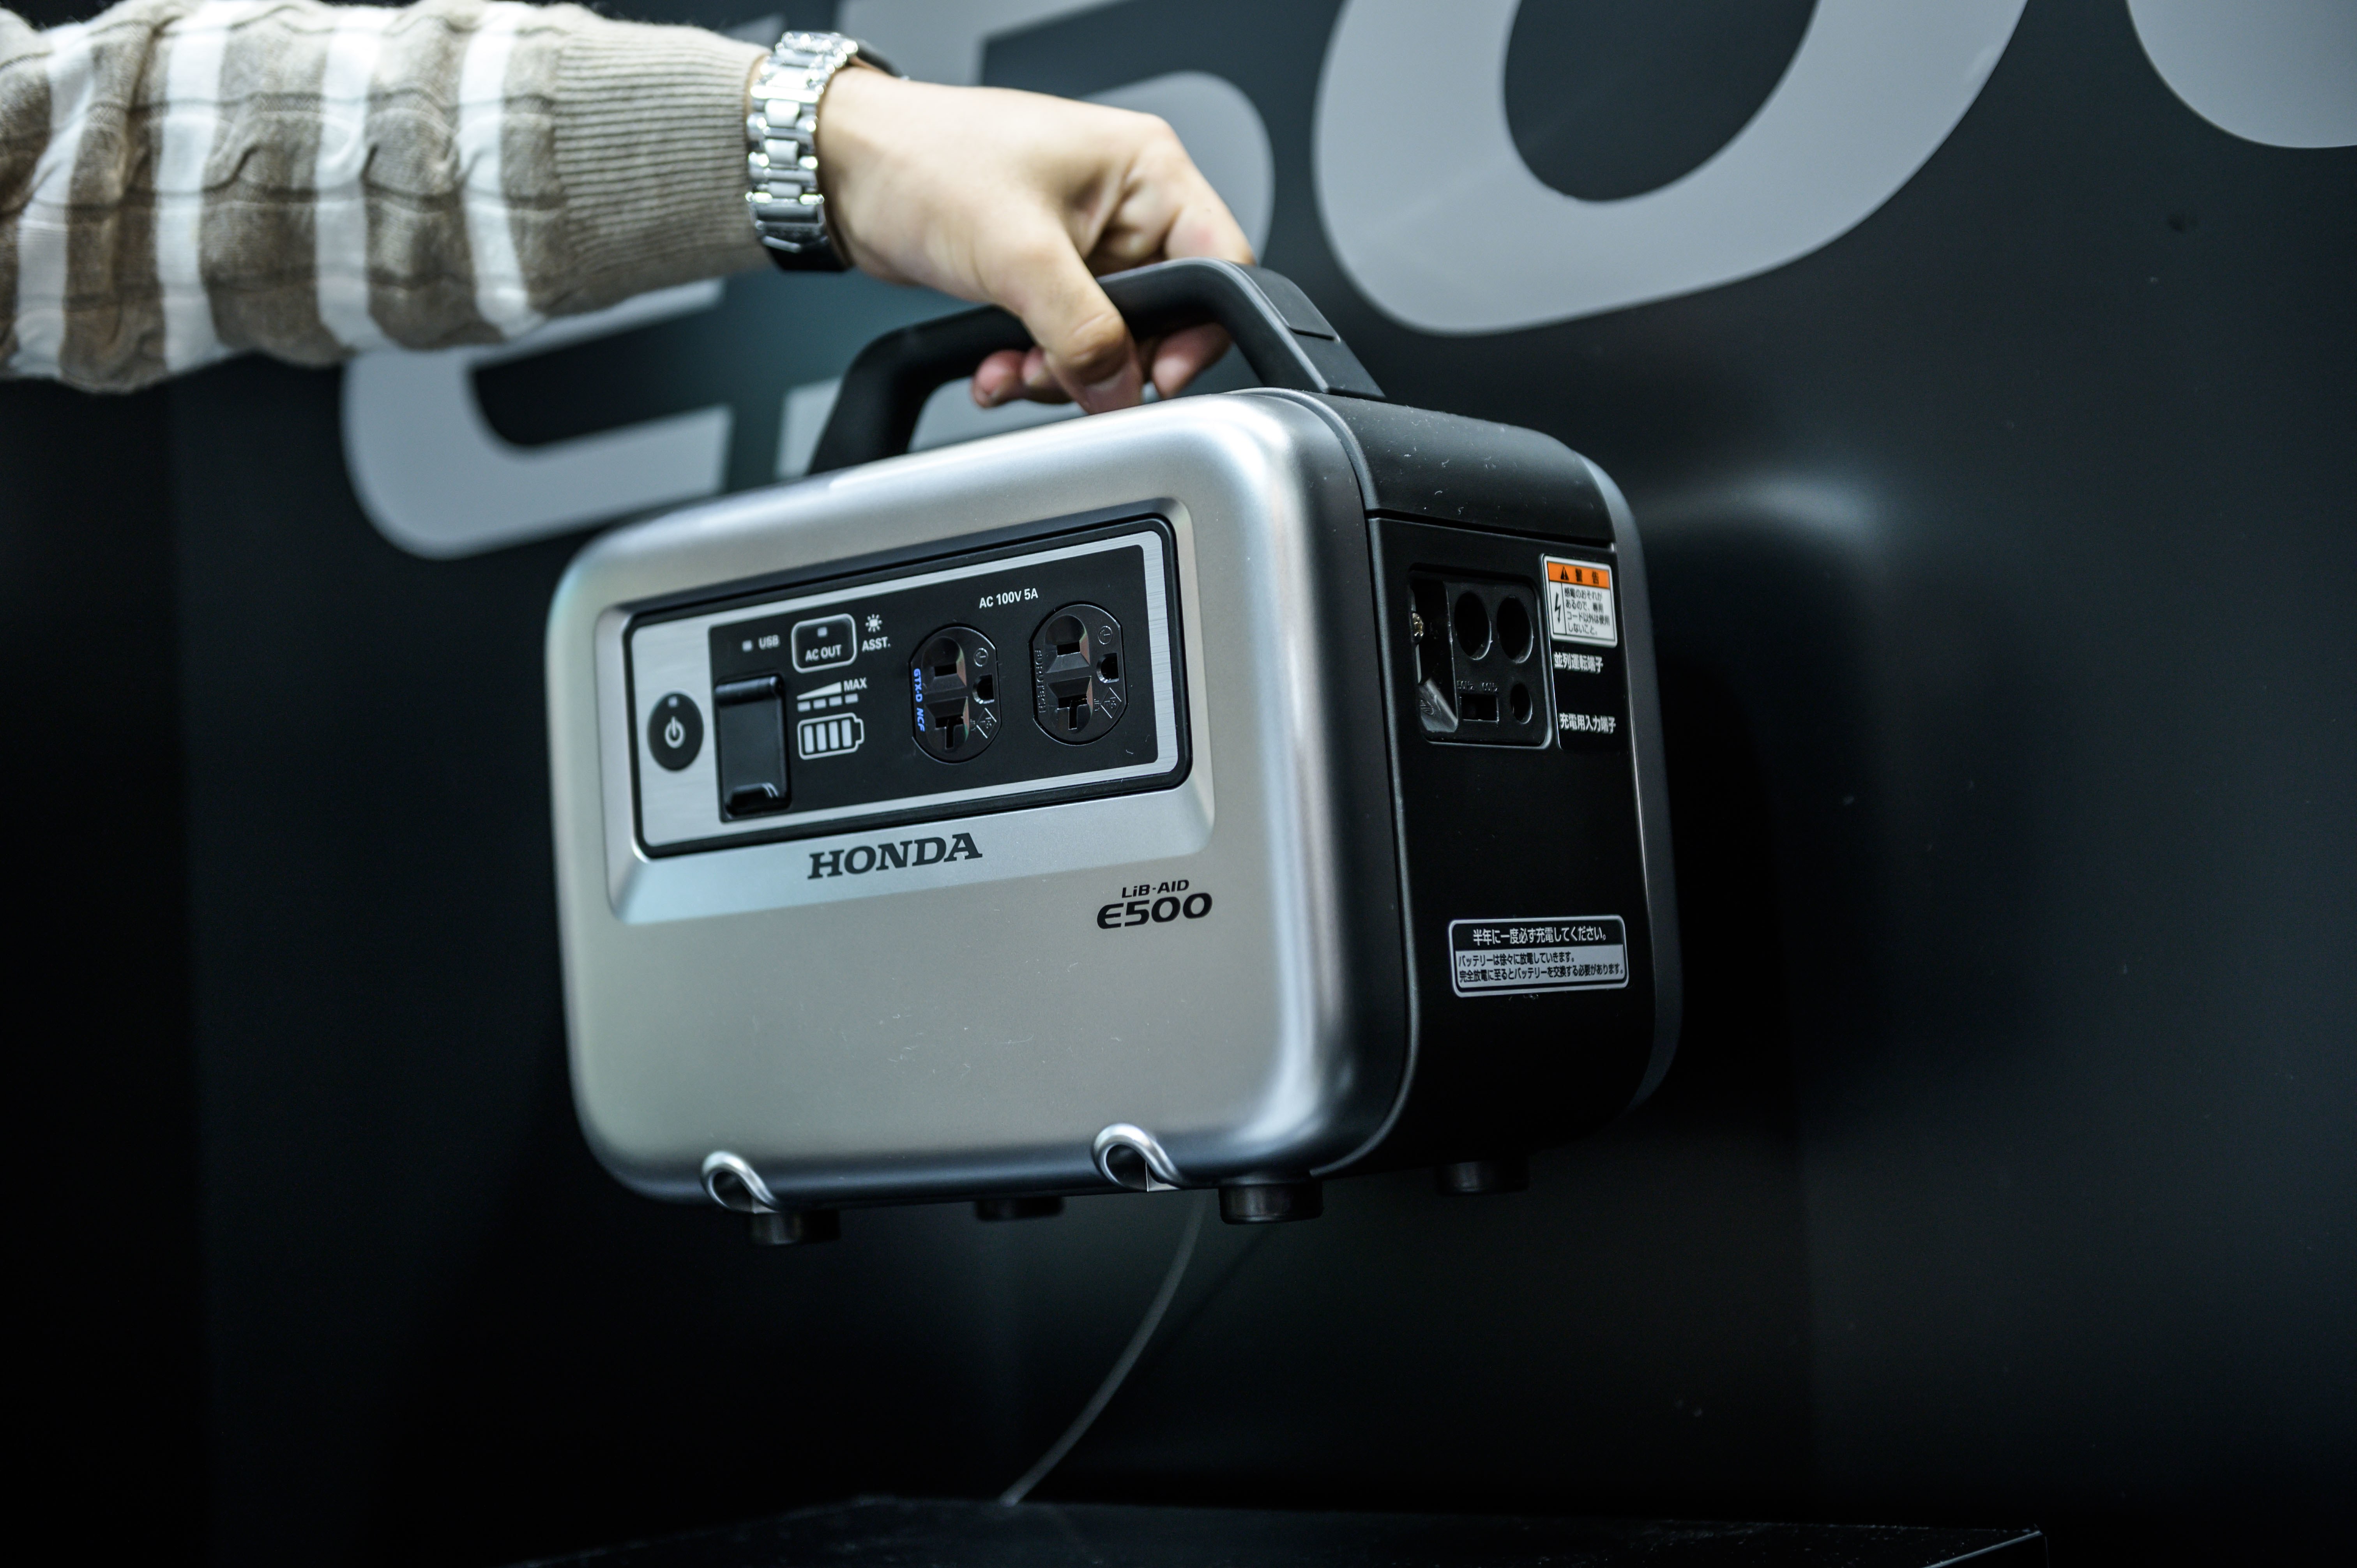 音楽好きに送る29万7000円の蓄電機とは ホンダ Lib Aid E500 For Music 登場 Gq Japan 自動車情報サイト 新車 中古車 Carview